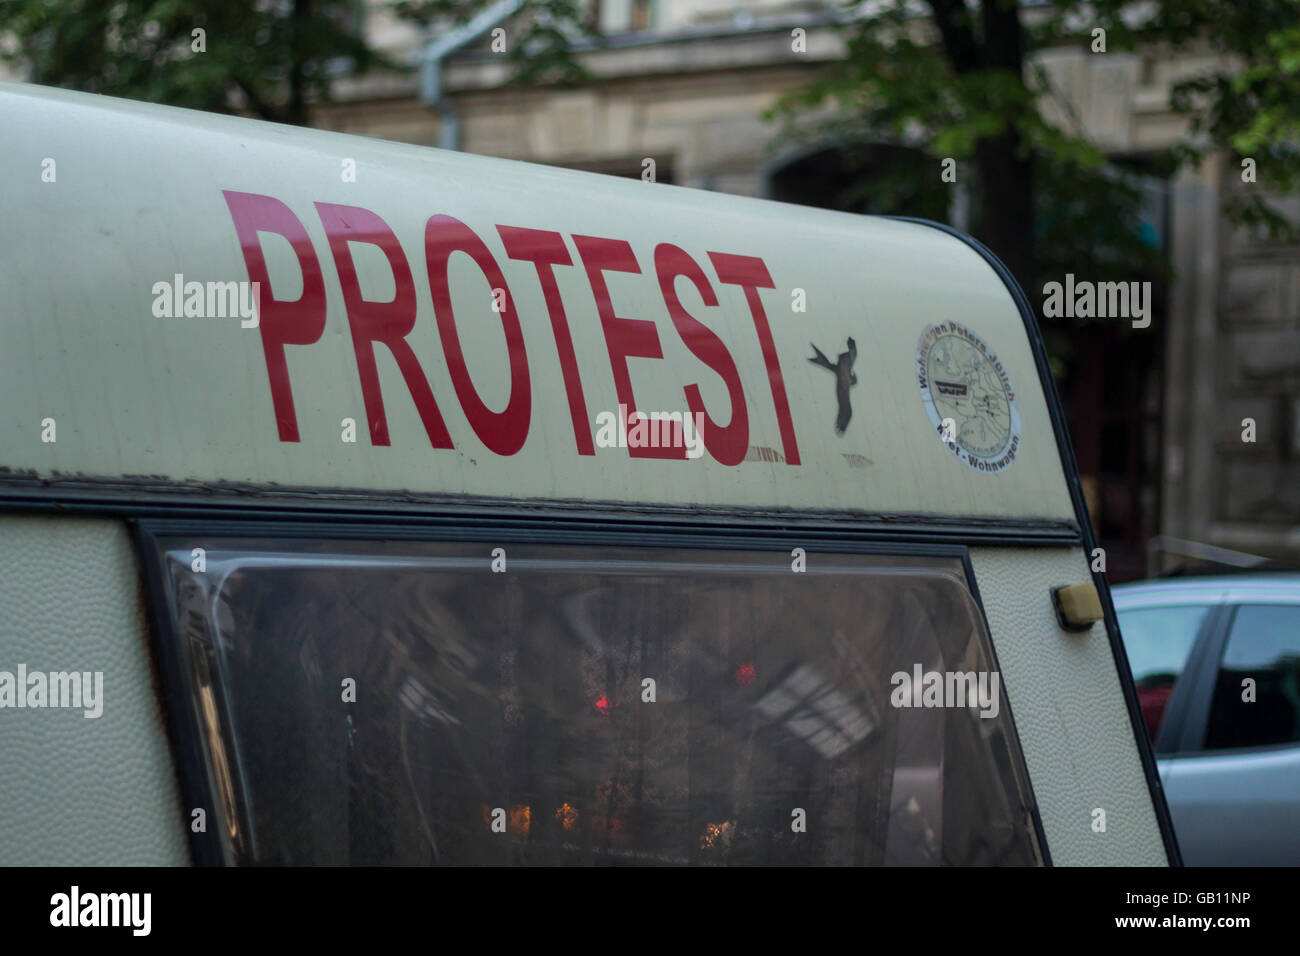 Chisinau, Moldova - May 21, 2016: Protester caravan near the government building in Chisinau, the Republic of Moldova Stock Photo